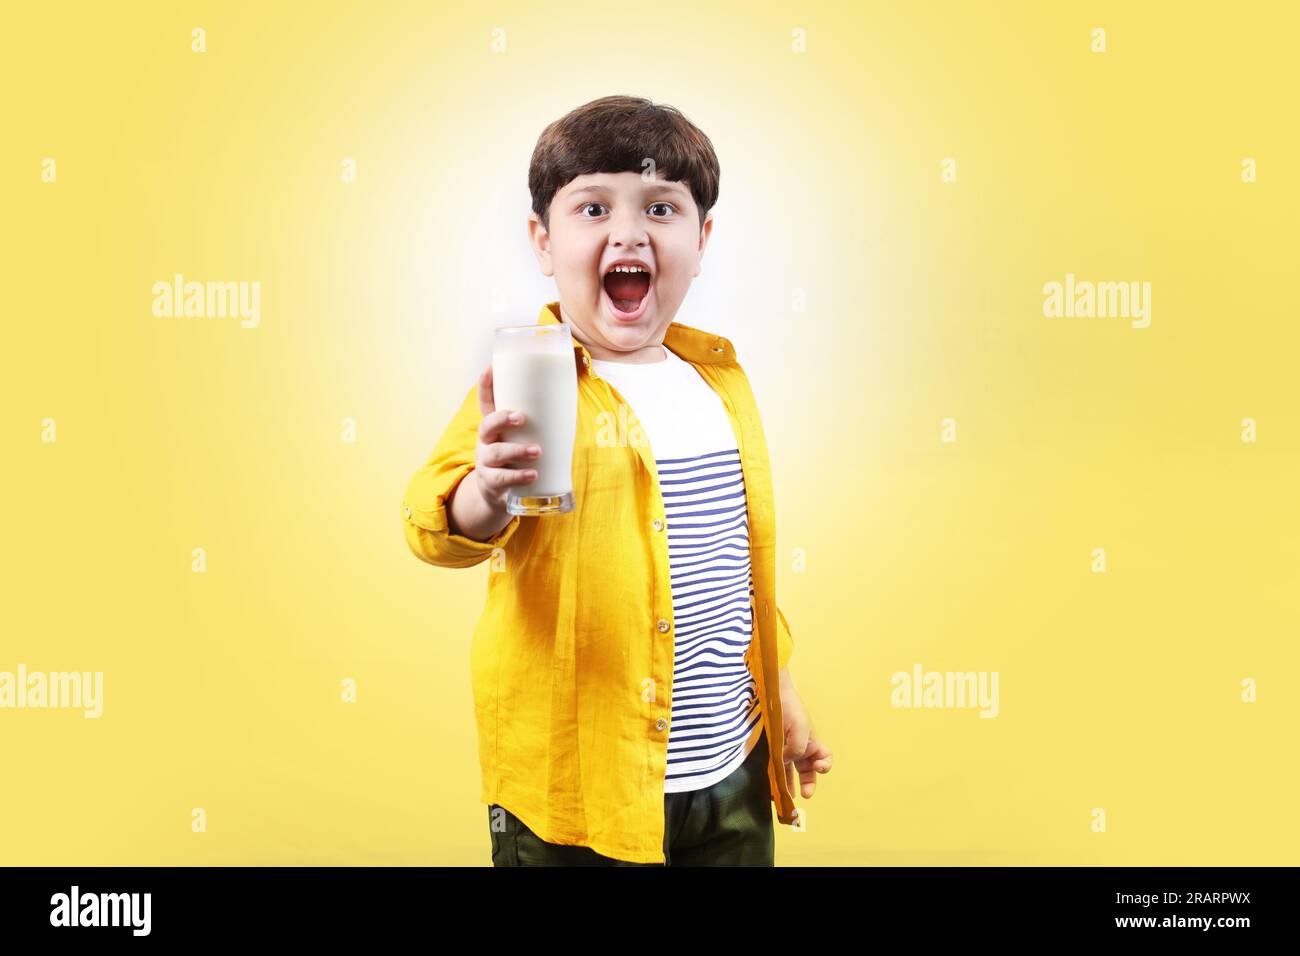 Ritratto di un bambino premuroso che tiene in mano un bicchiere di latte con molta sicurezza e il piccolo campione sta dando un sorriso molto cattivo e sicuro. Foto Stock